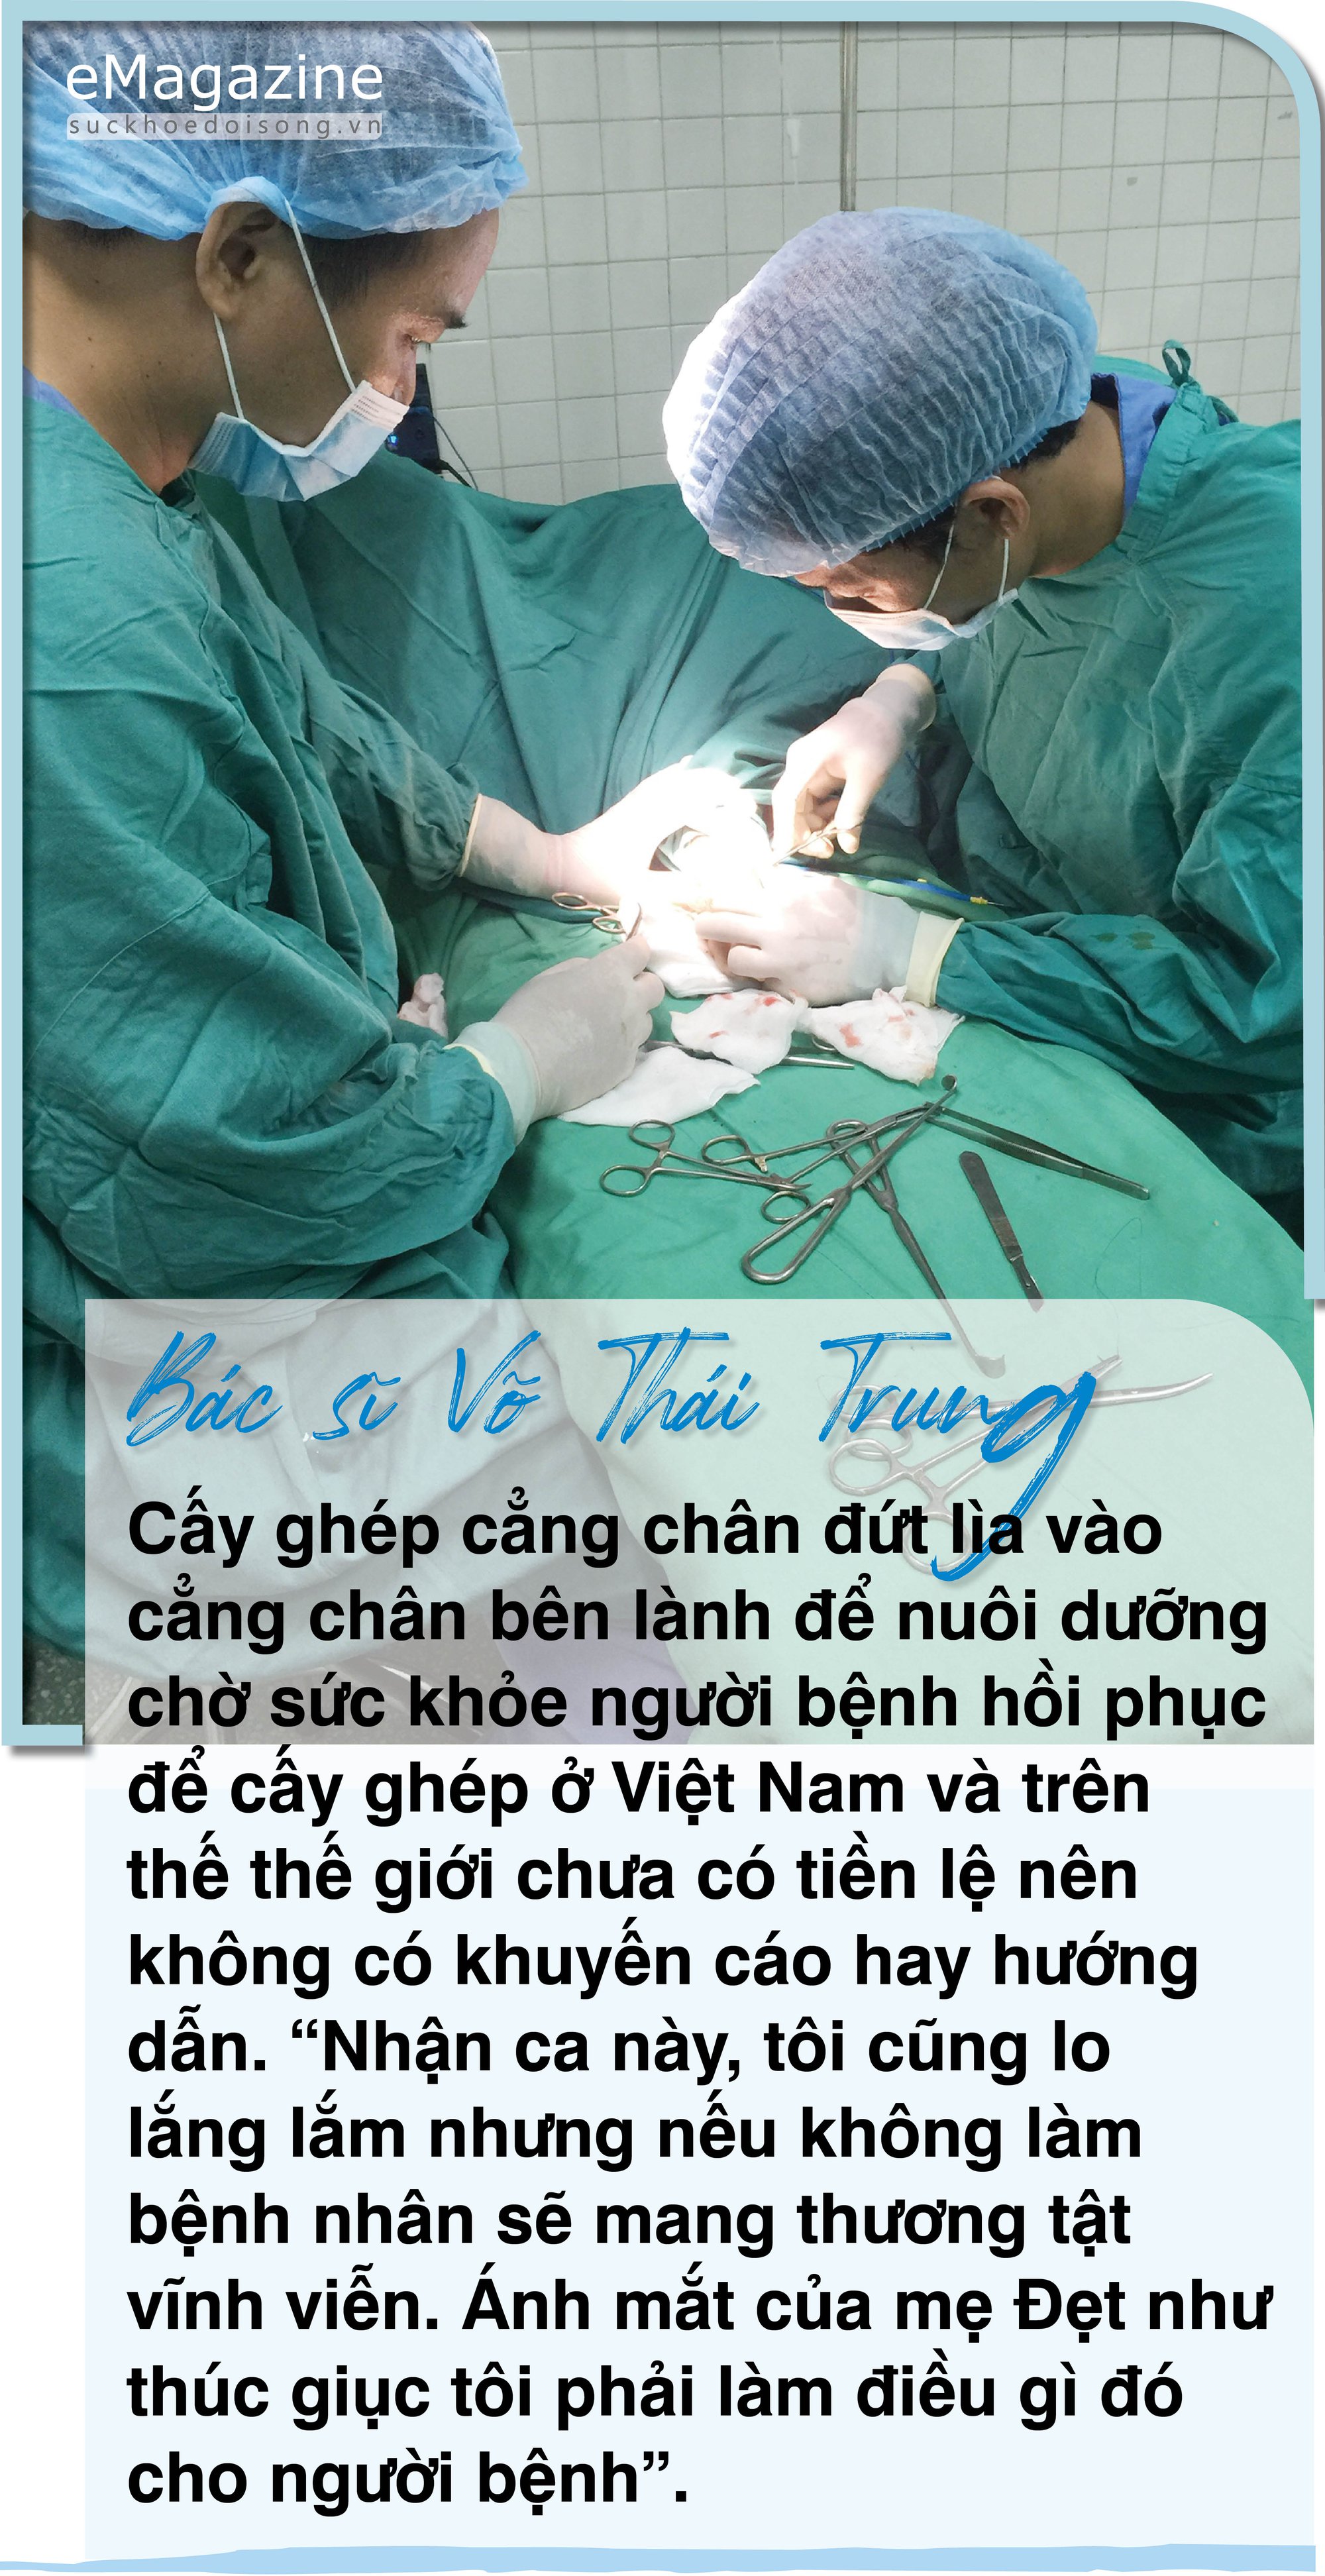 Bác sĩ Võ Thái Trung: “Thêu hoa, dệt gấm” hồi sinh những mảnh đời - Ảnh 4.